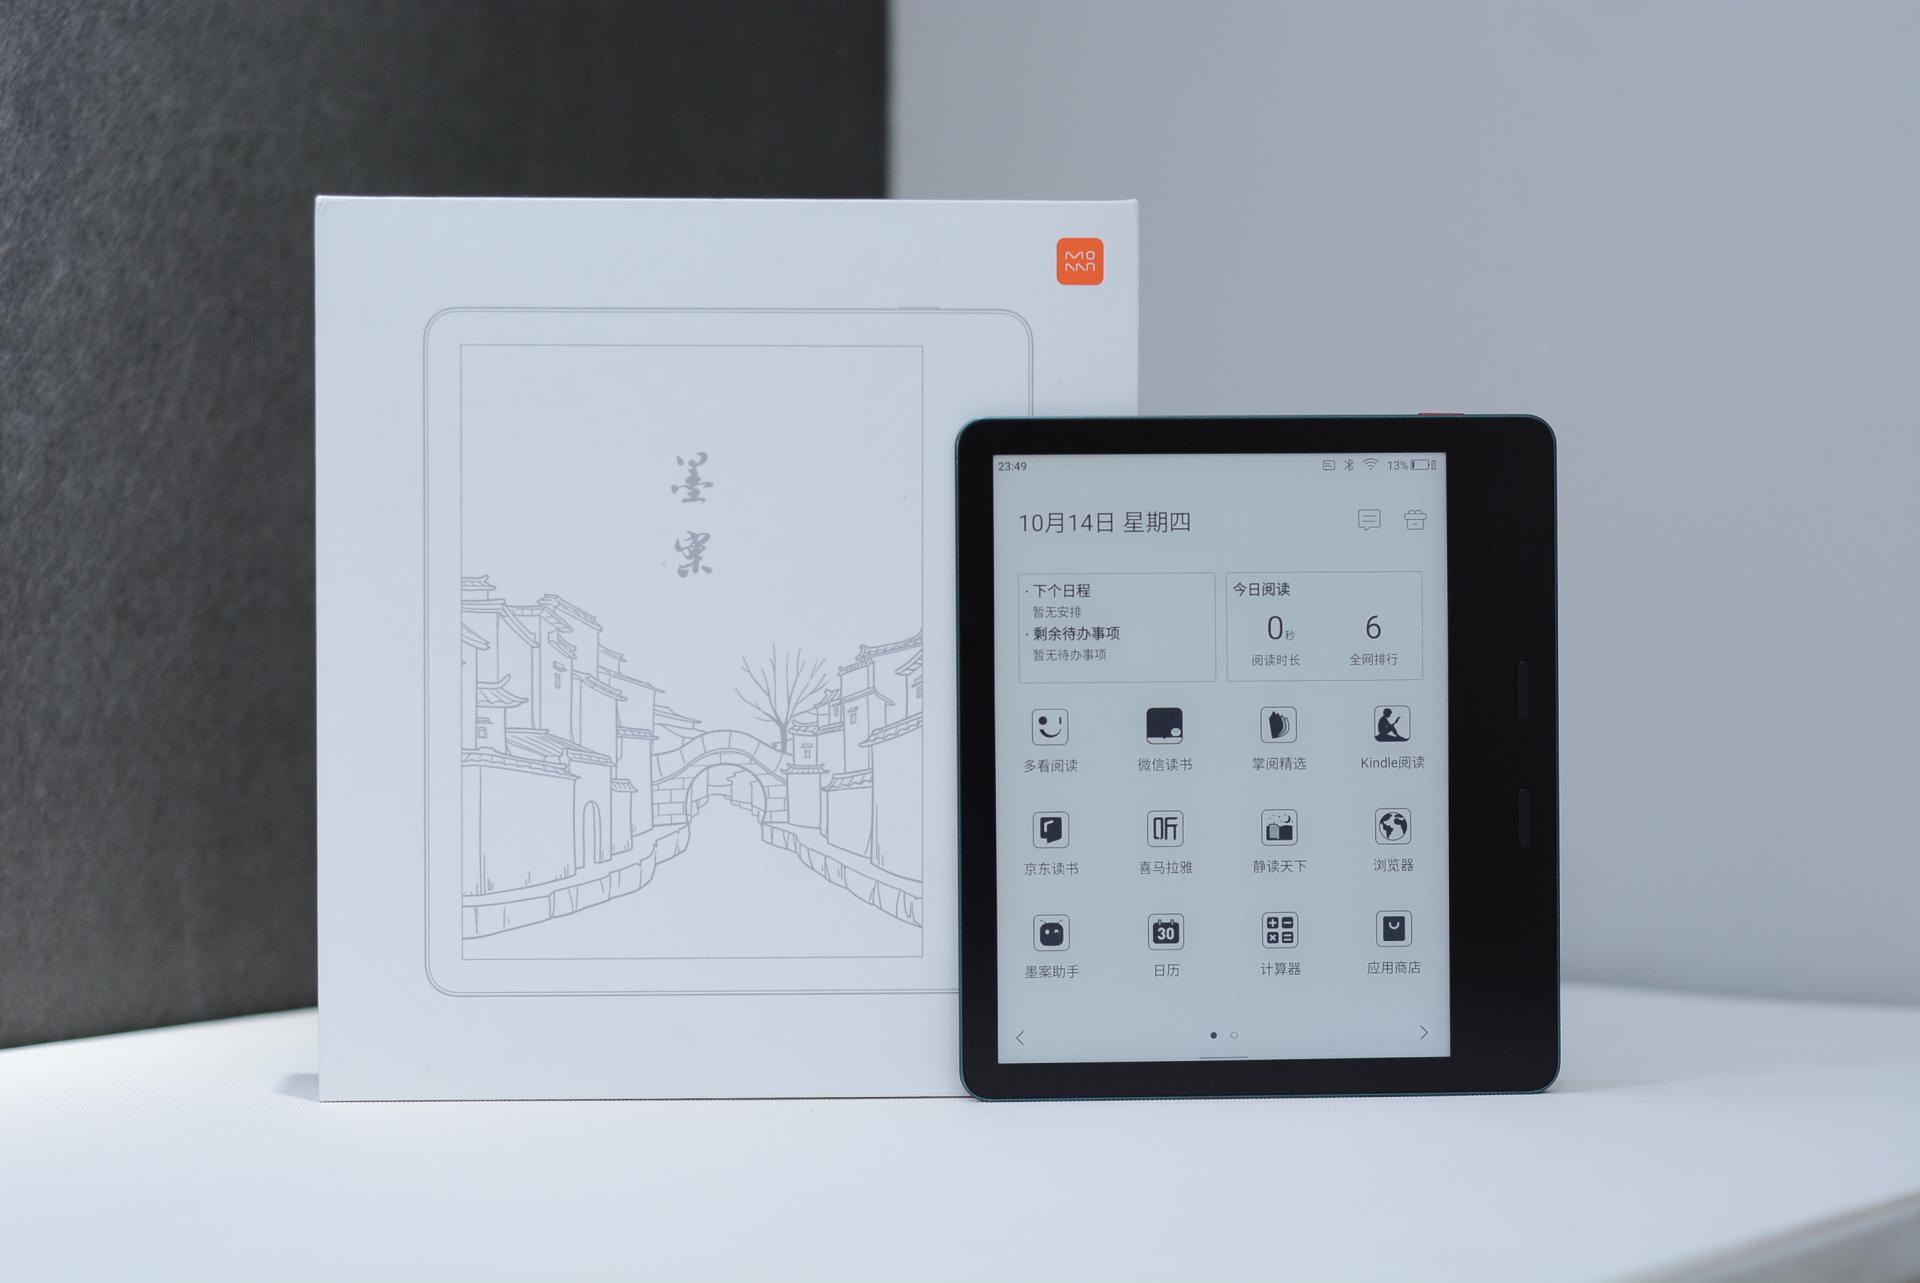 Xiaomi Moaan Air Ebook 6-Inch E-ink Ebook Reader – Good e-Reader Shopify  Store